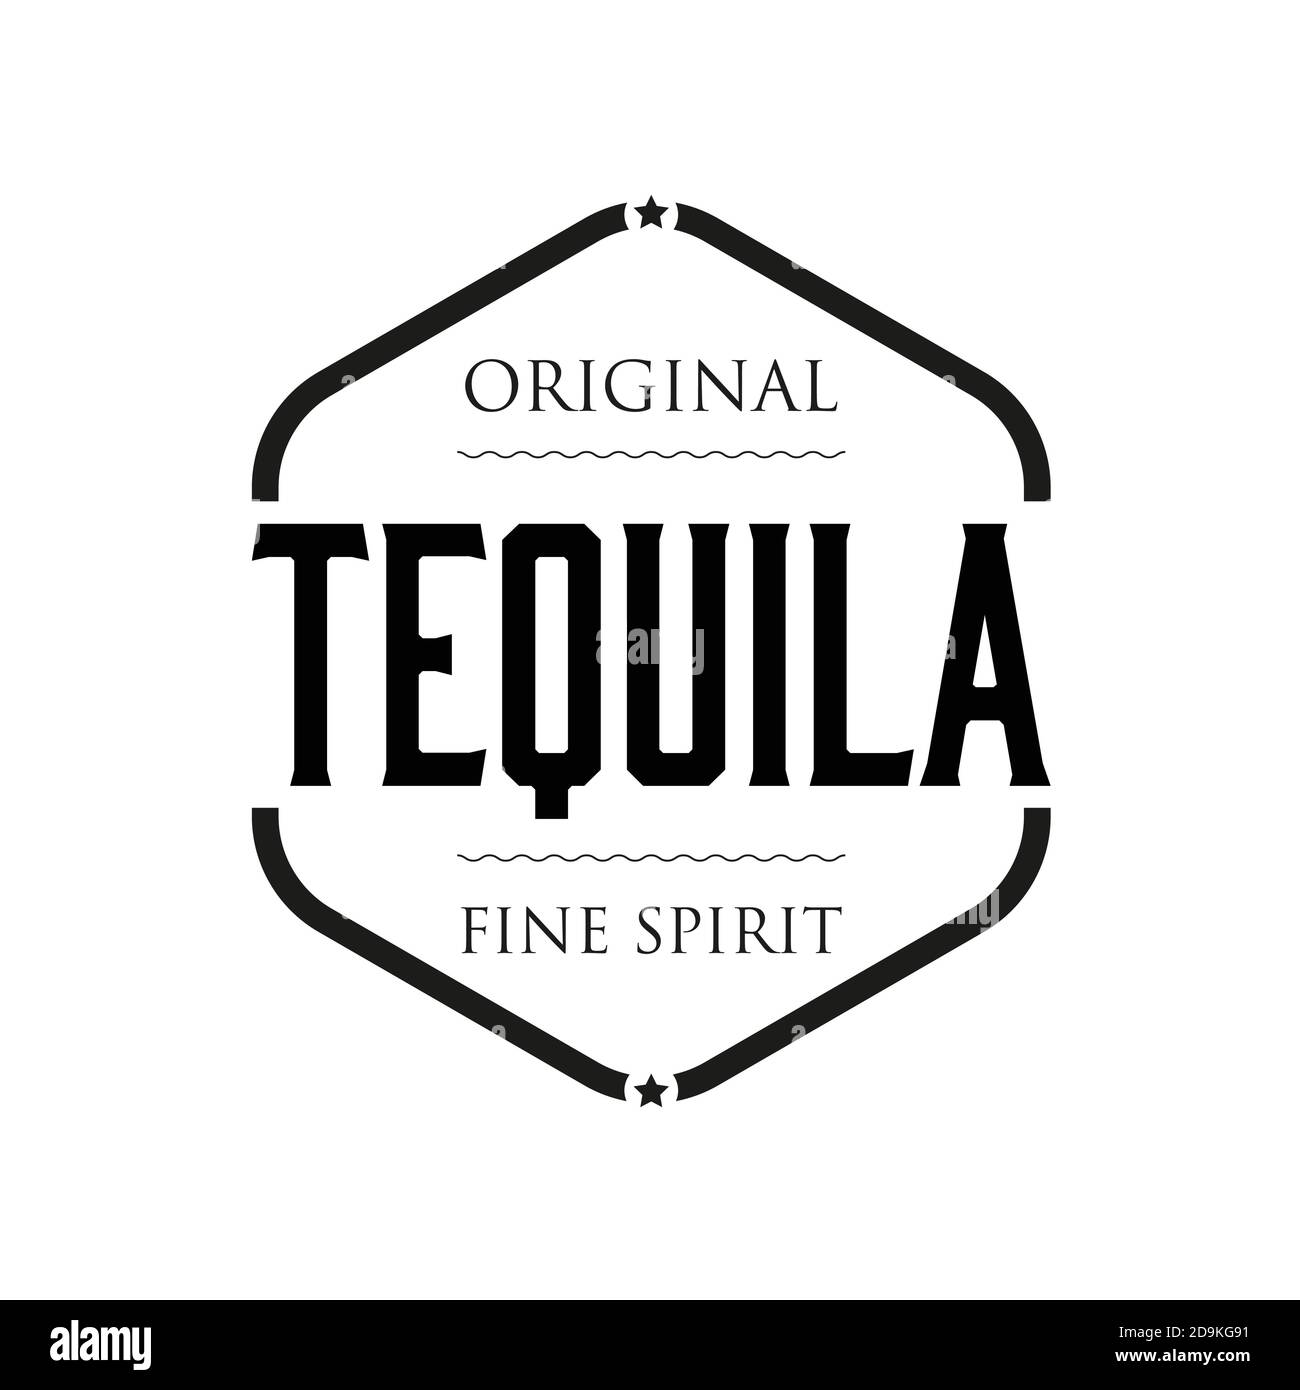 Original Tequila signo de espíritu sello vintage Ilustración del Vector